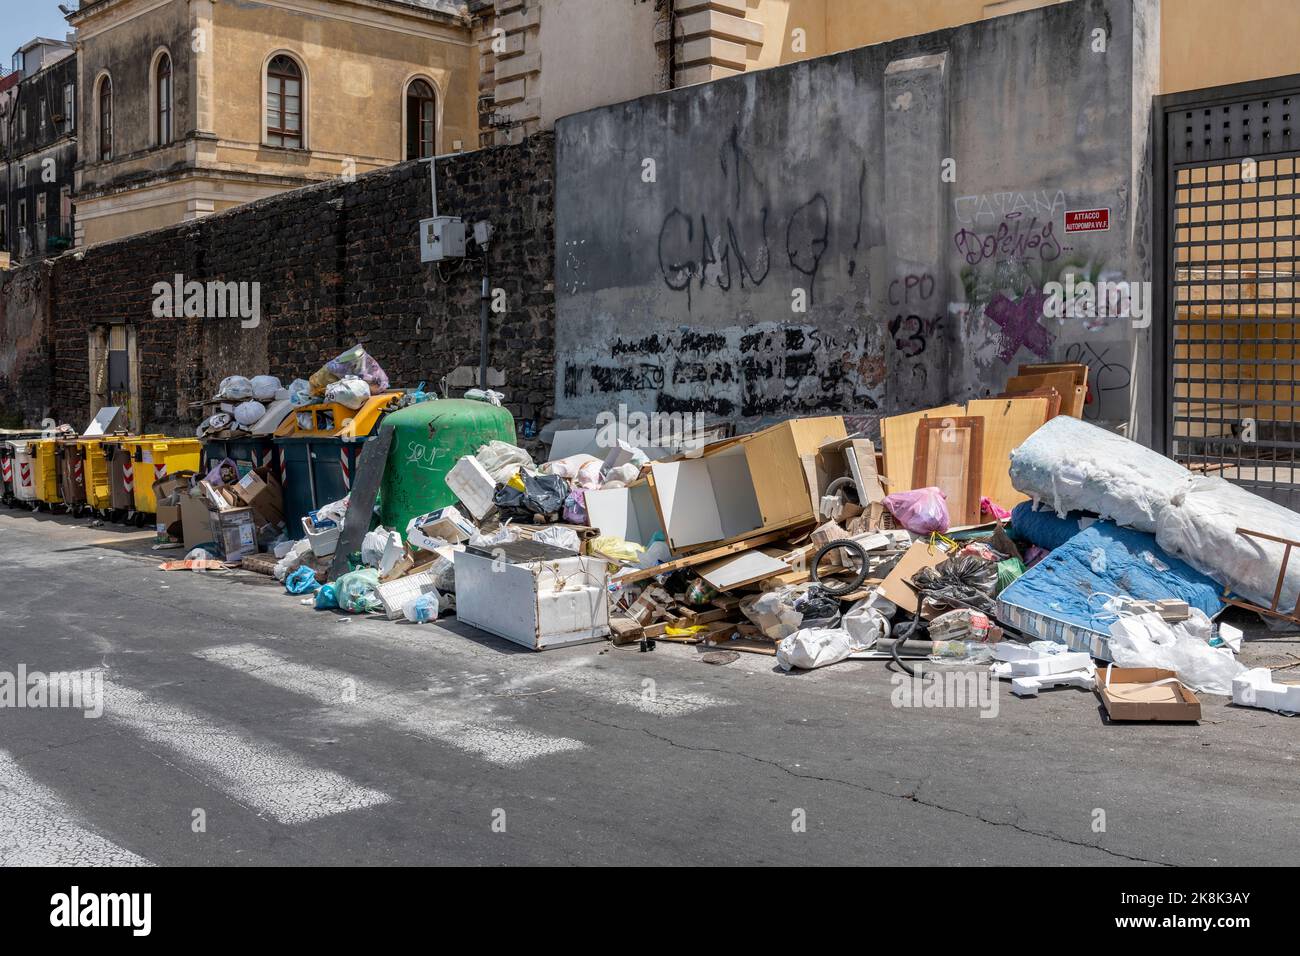 Un tas énorme de déchets domestiques sur une rue à Catane, Sicile, Italie. L'élimination appropriée des déchets est un problème majeur dans la ville et dans une grande partie de la Sicile Banque D'Images